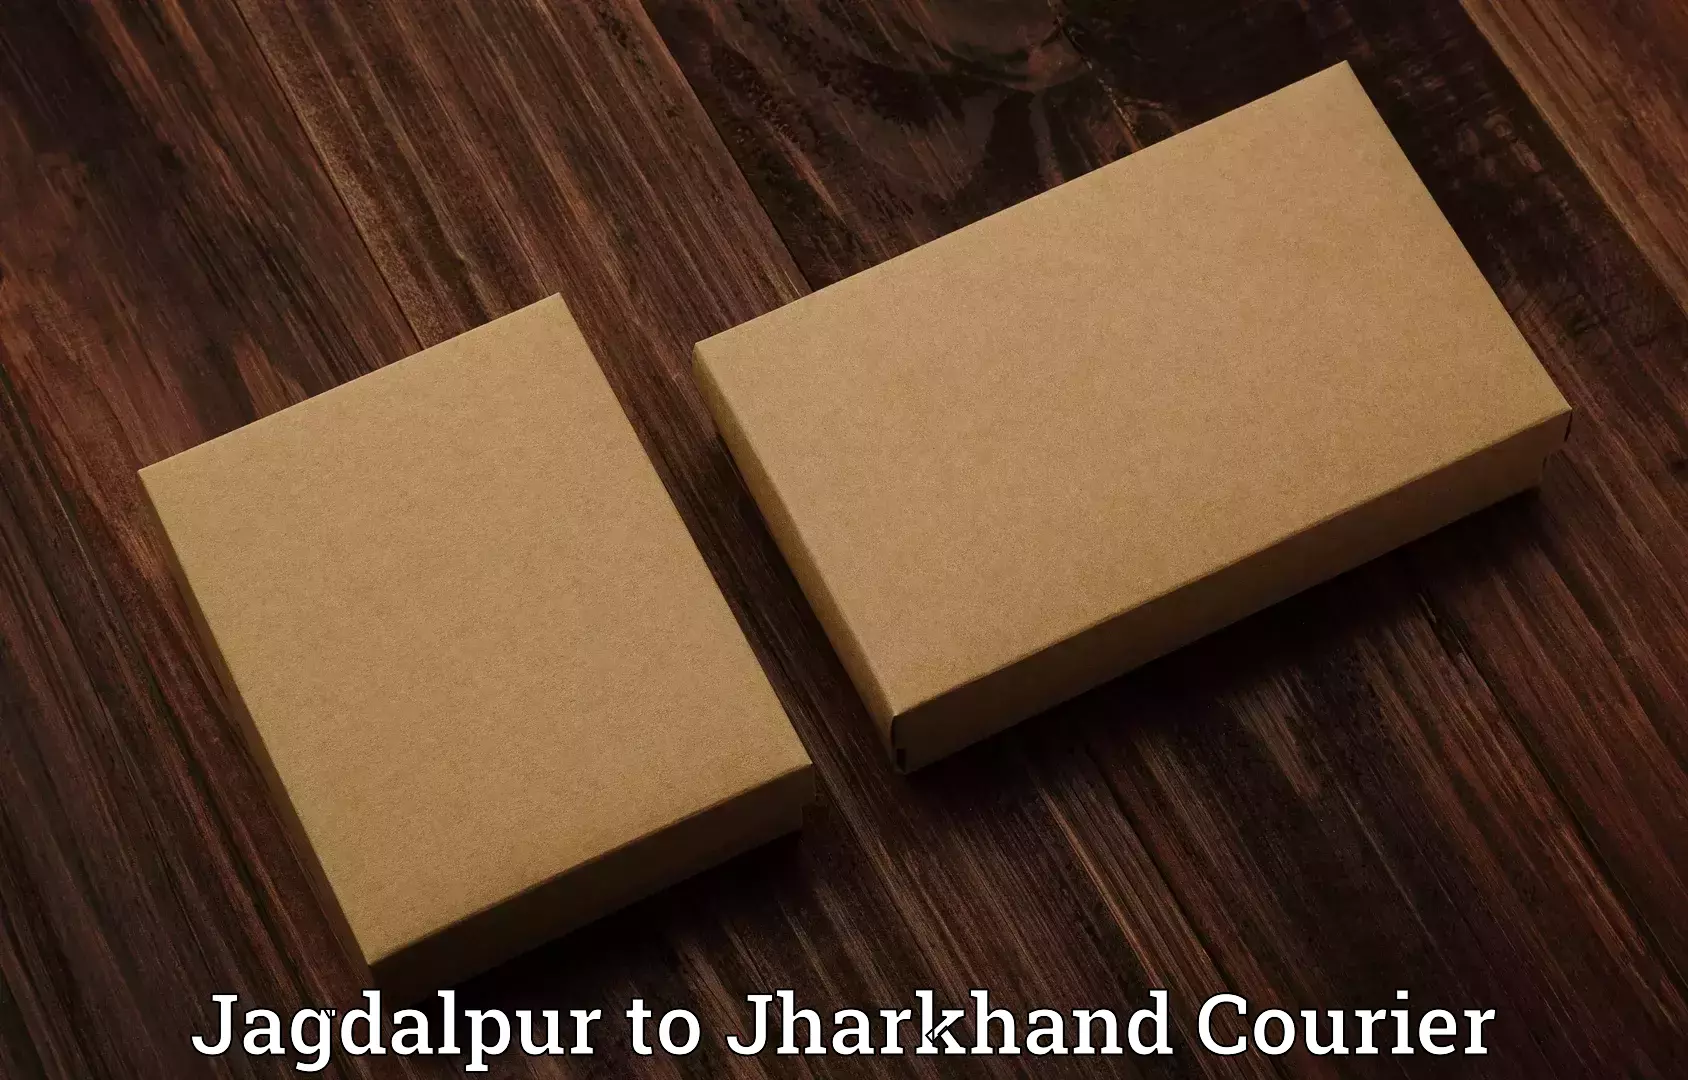 Personal effects shipping Jagdalpur to Godda